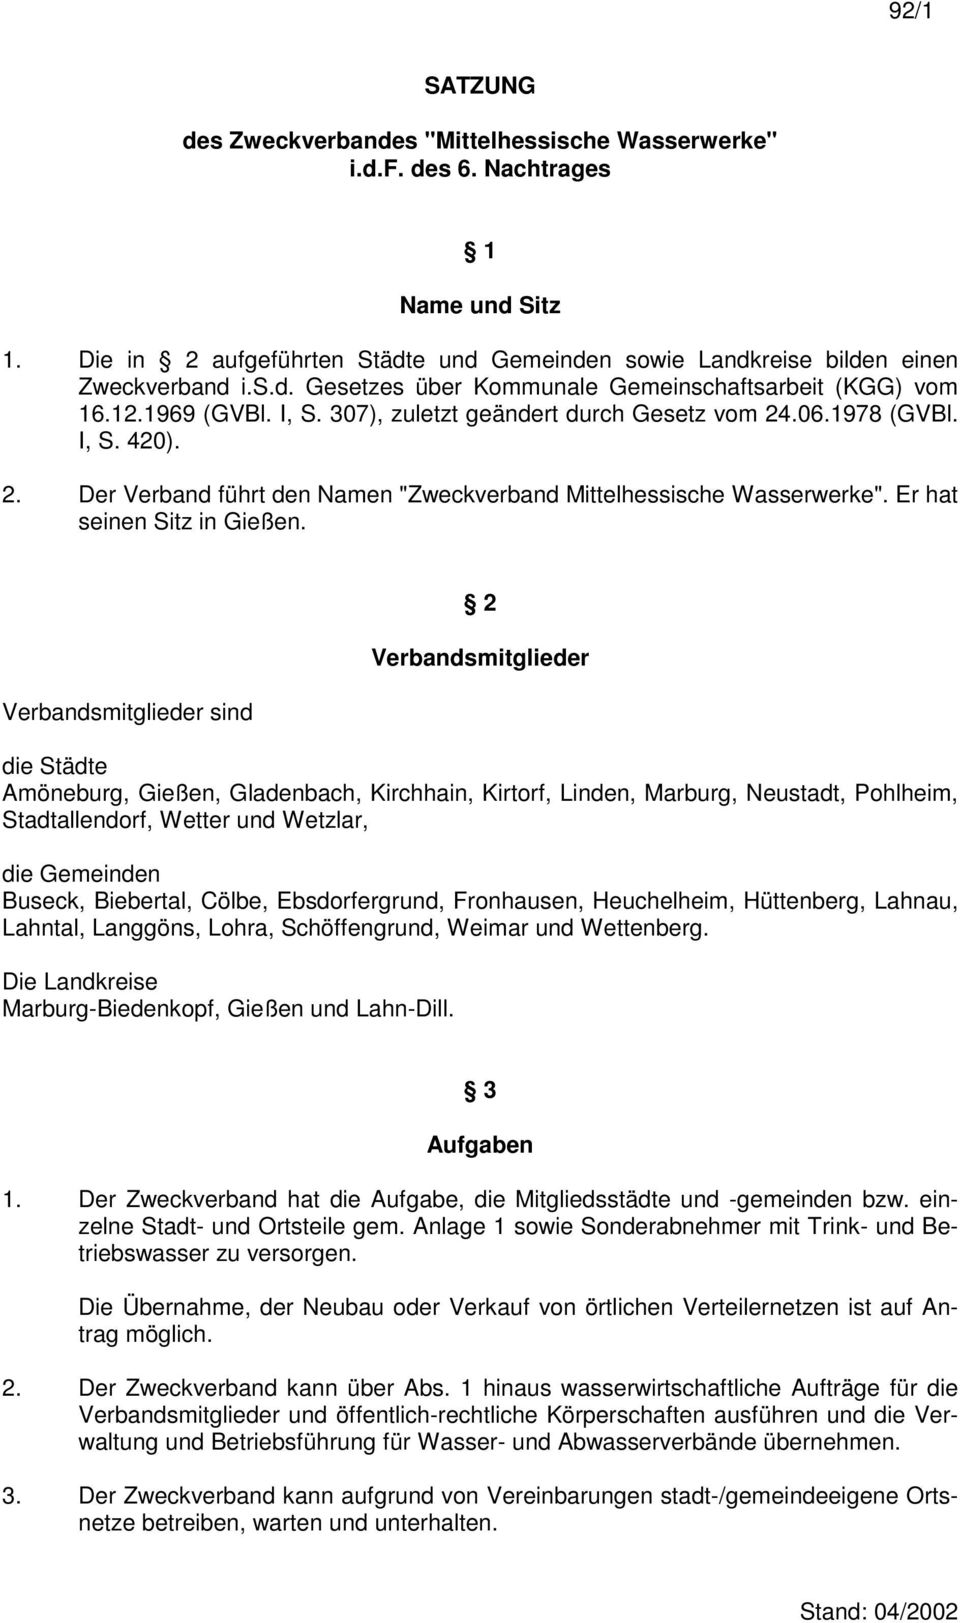 Verbandsmitglieder sind 2 Verbandsmitglieder die Städte Amöneburg, Gießen, Gladenbach, Kirchhain, Kirtorf, Linden, Marburg, Neustadt, Pohlheim, Stadtallendorf, Wetter und Wetzlar, die Gemeinden